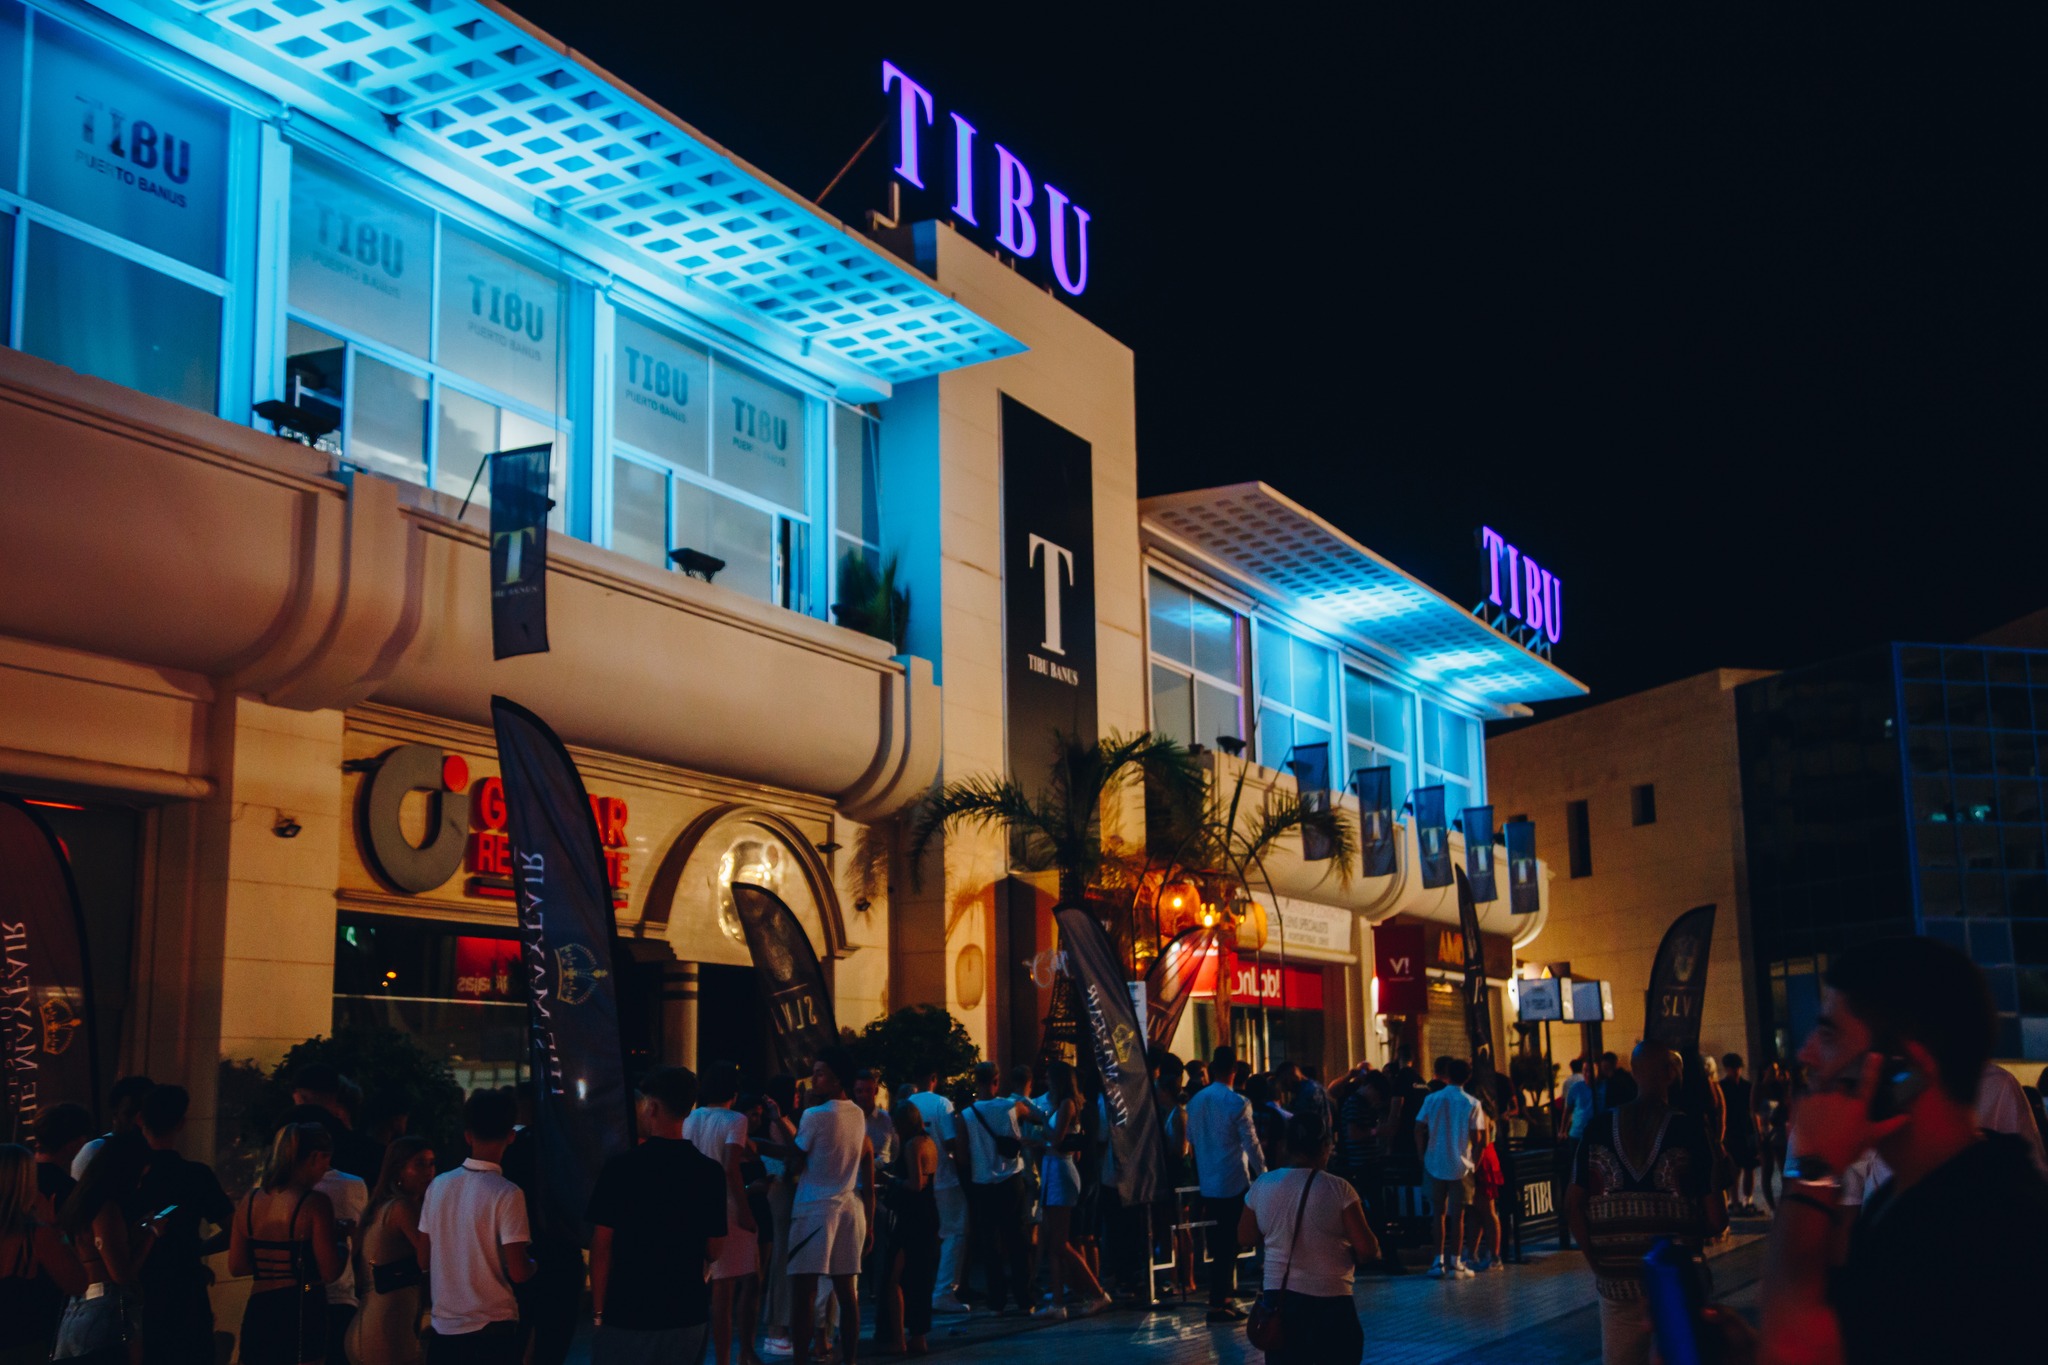 TIBU Night club Puerto Banus, Marbella